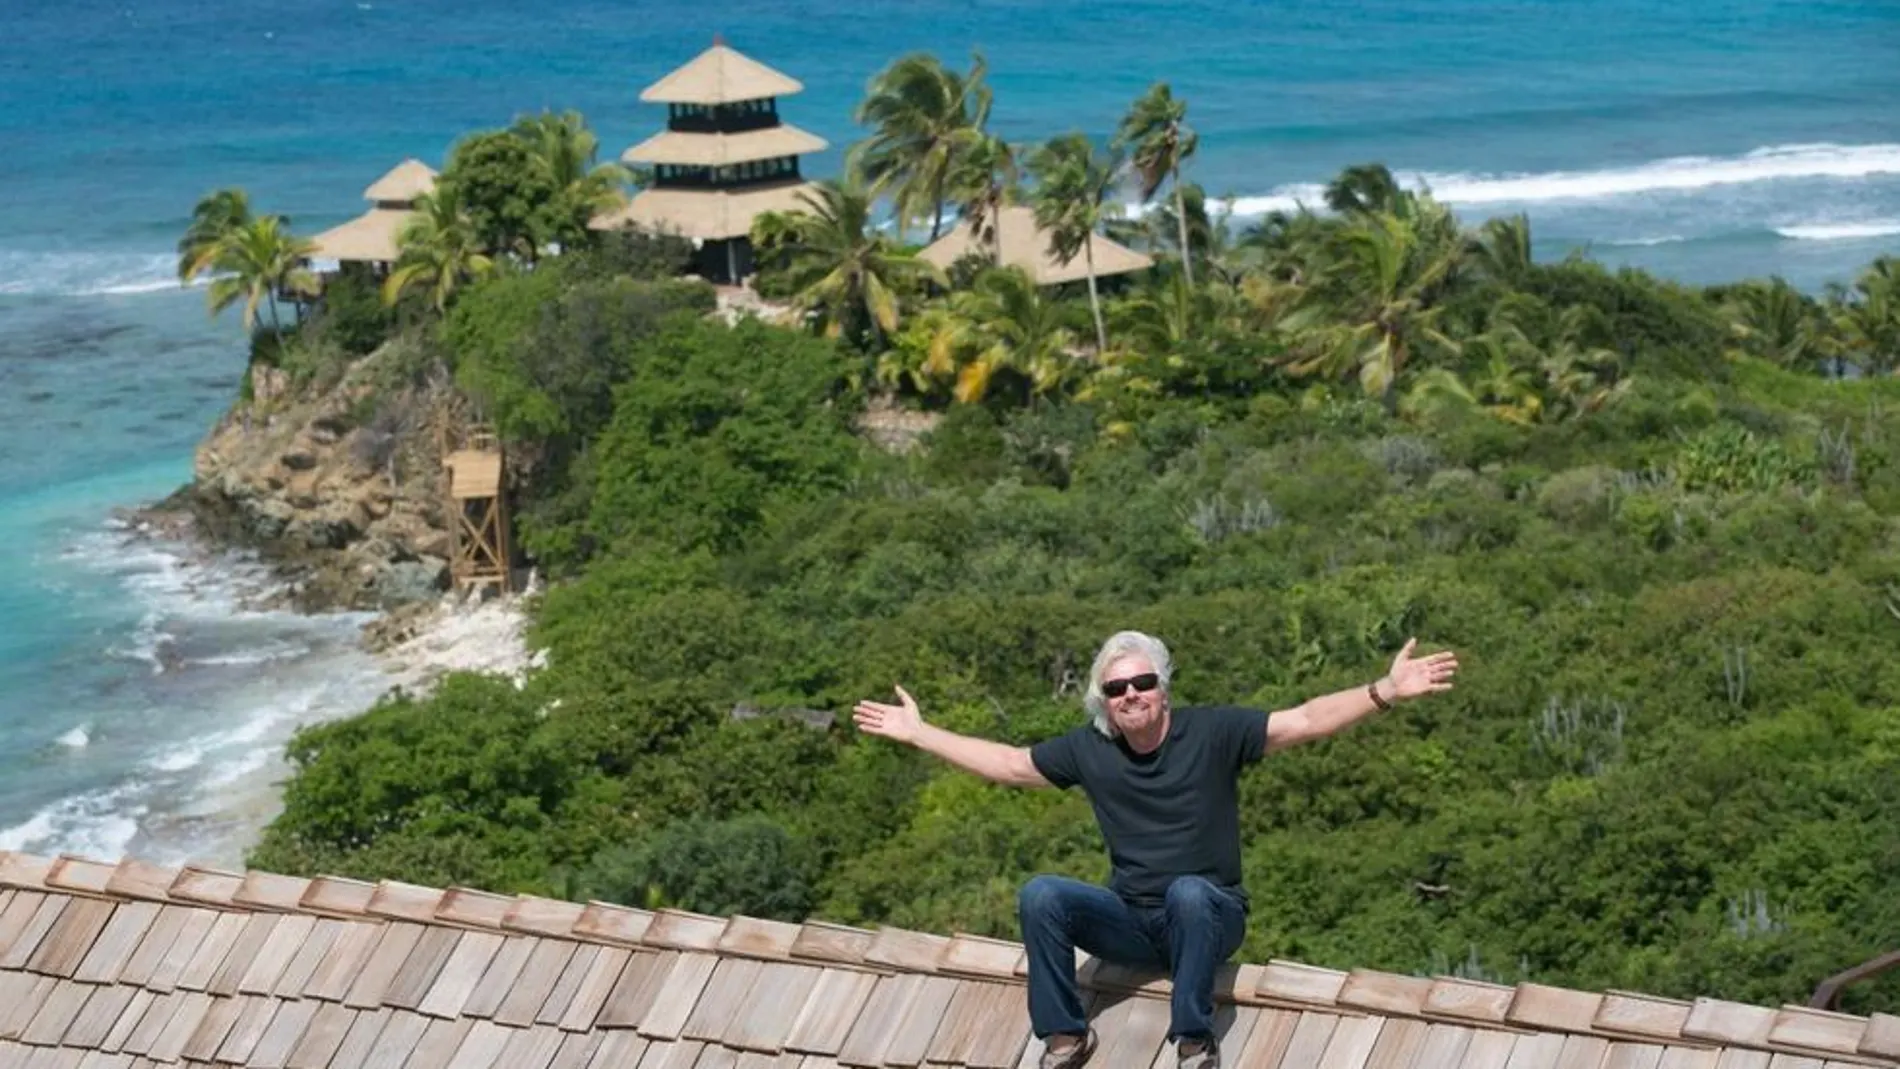 Richard Branson, propietario de Virgin, necesita que alguien cuide su isla en el Caribe